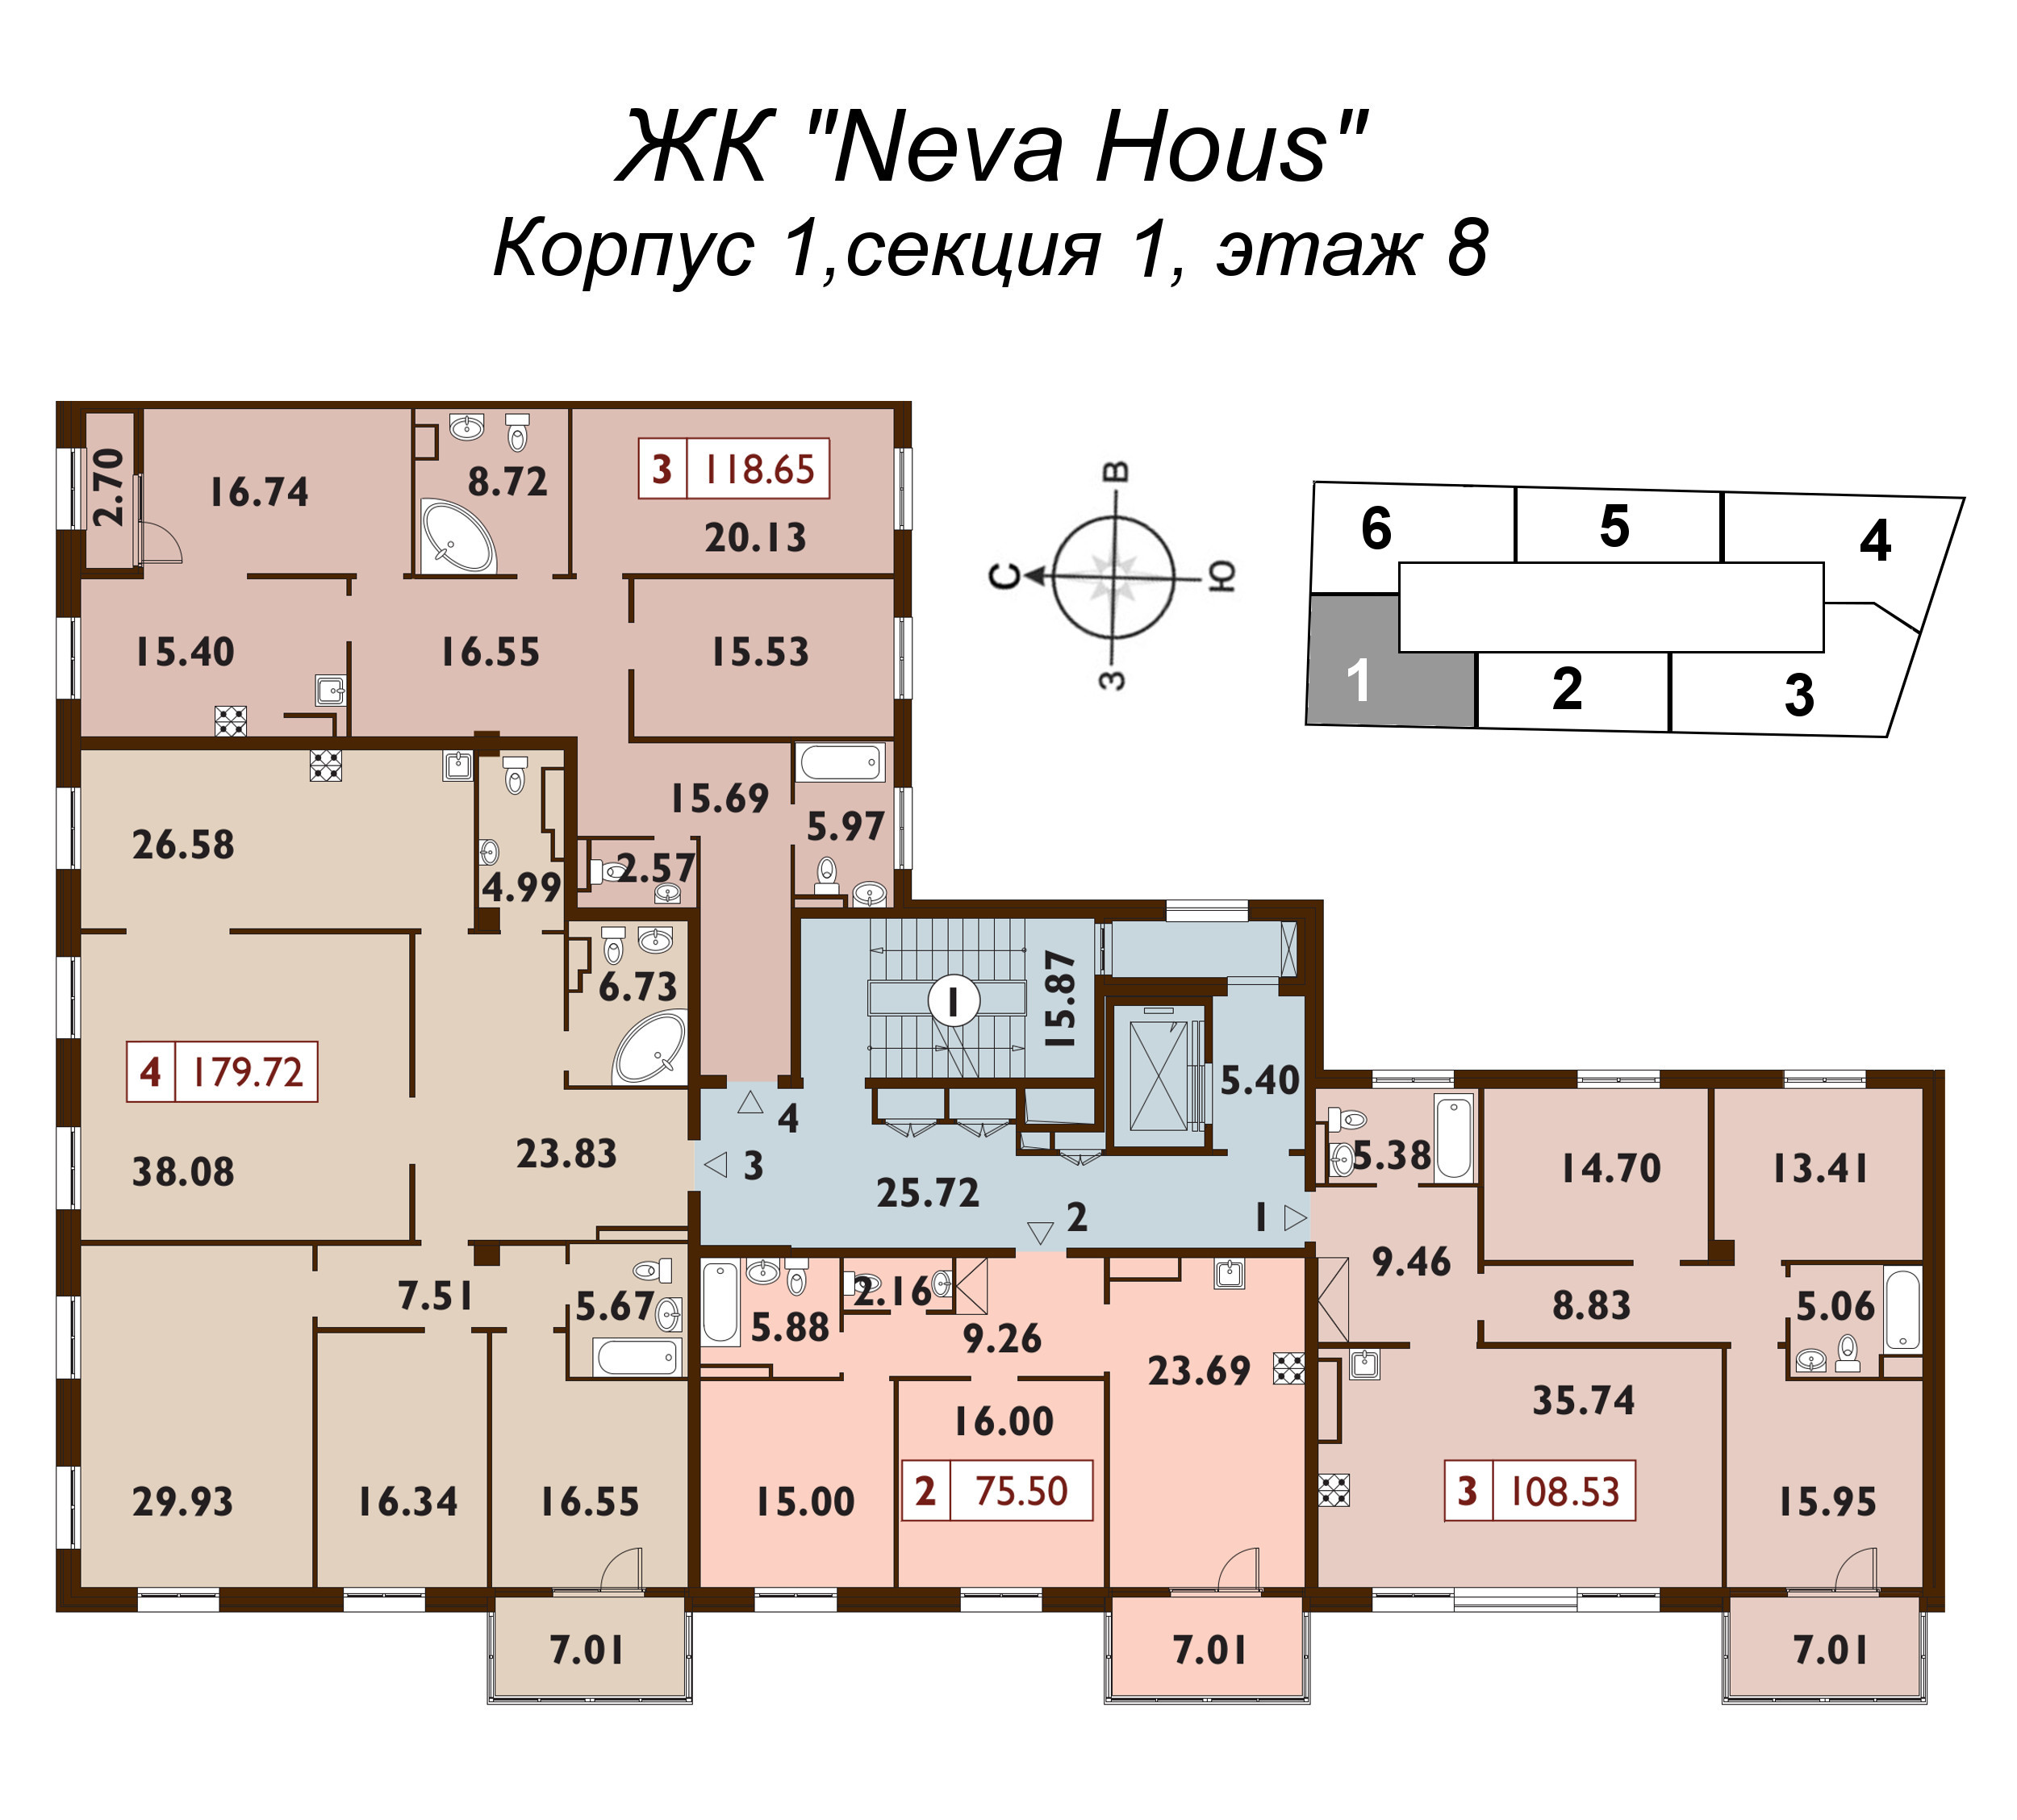 4-комнатная (Евро) квартира, 118.7 м² в ЖК "Neva Haus" - планировка этажа